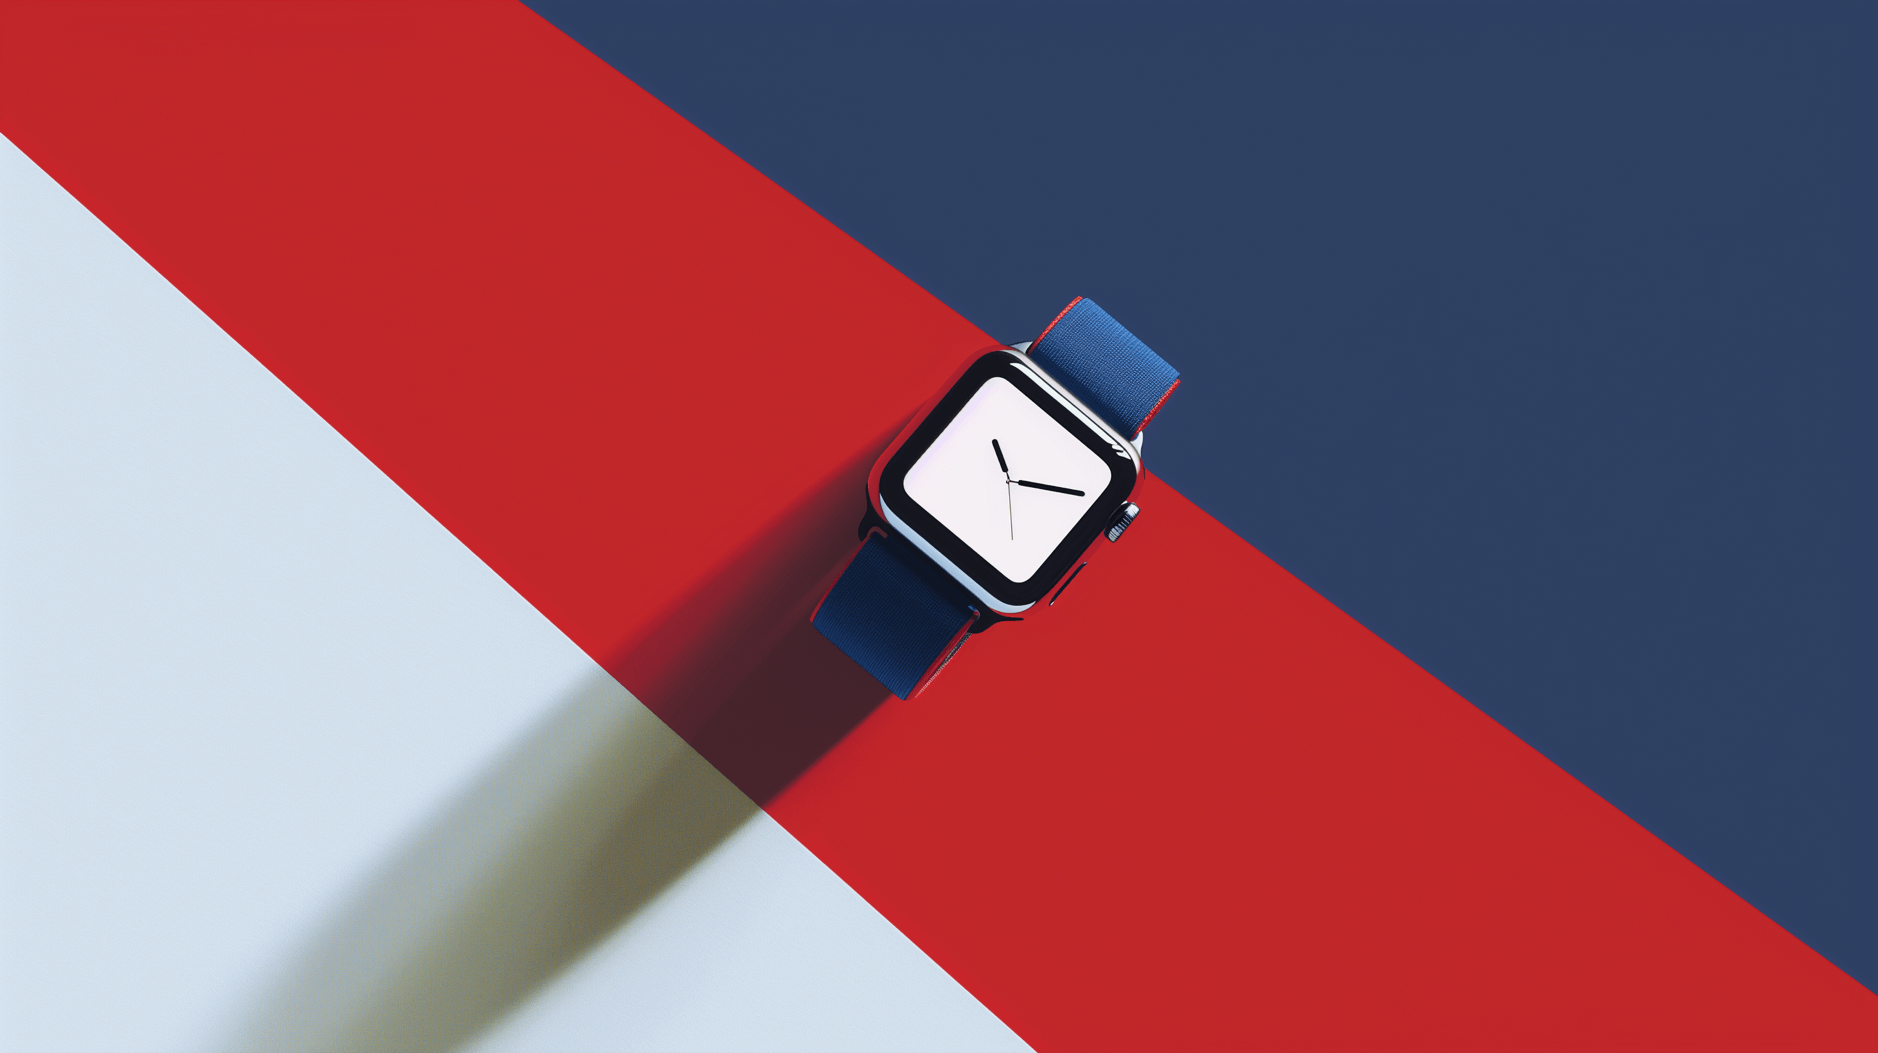 Symbolbild: Das Bild zeigt eine Apple Watch mit einem blauen Armband auf einem Hintergrund, der diagonal in rot und dunkelblau unterteilt ist und einen Schatten wirft. Die Uhr zeigt eine einfache Zifferblattanzeige mit Zeigern.